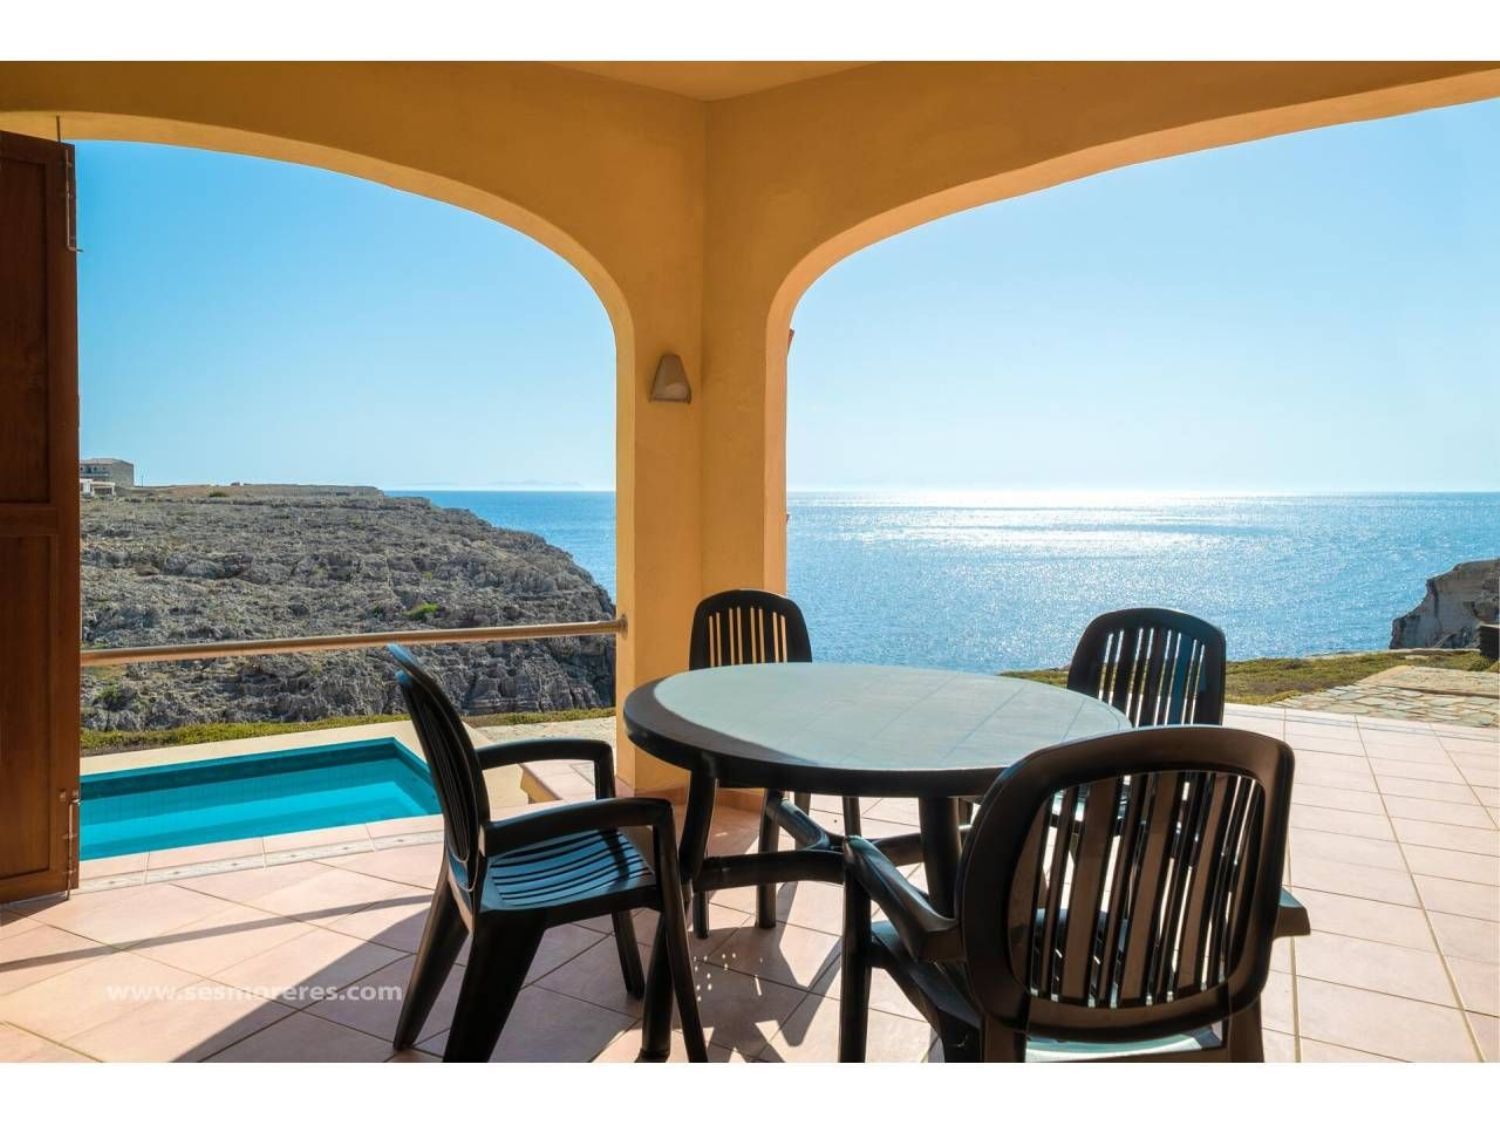 Casa en venta en primera línea de mar en Cala en Blanes, en Menorca